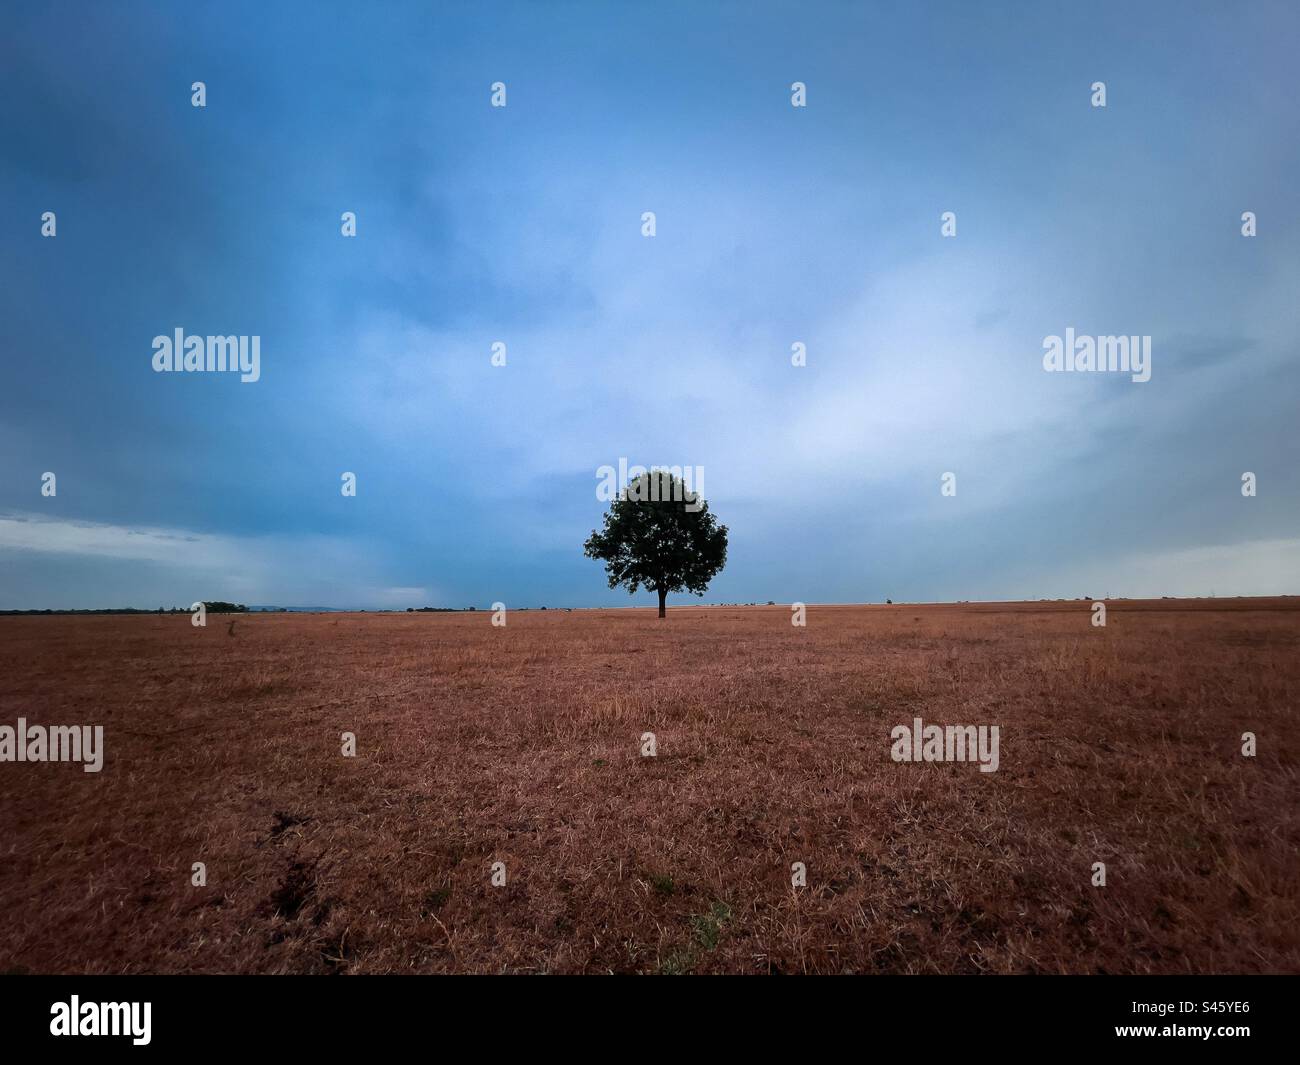 Albero solitario nel mezzo di un campo in una giornata nuvolosa Foto Stock